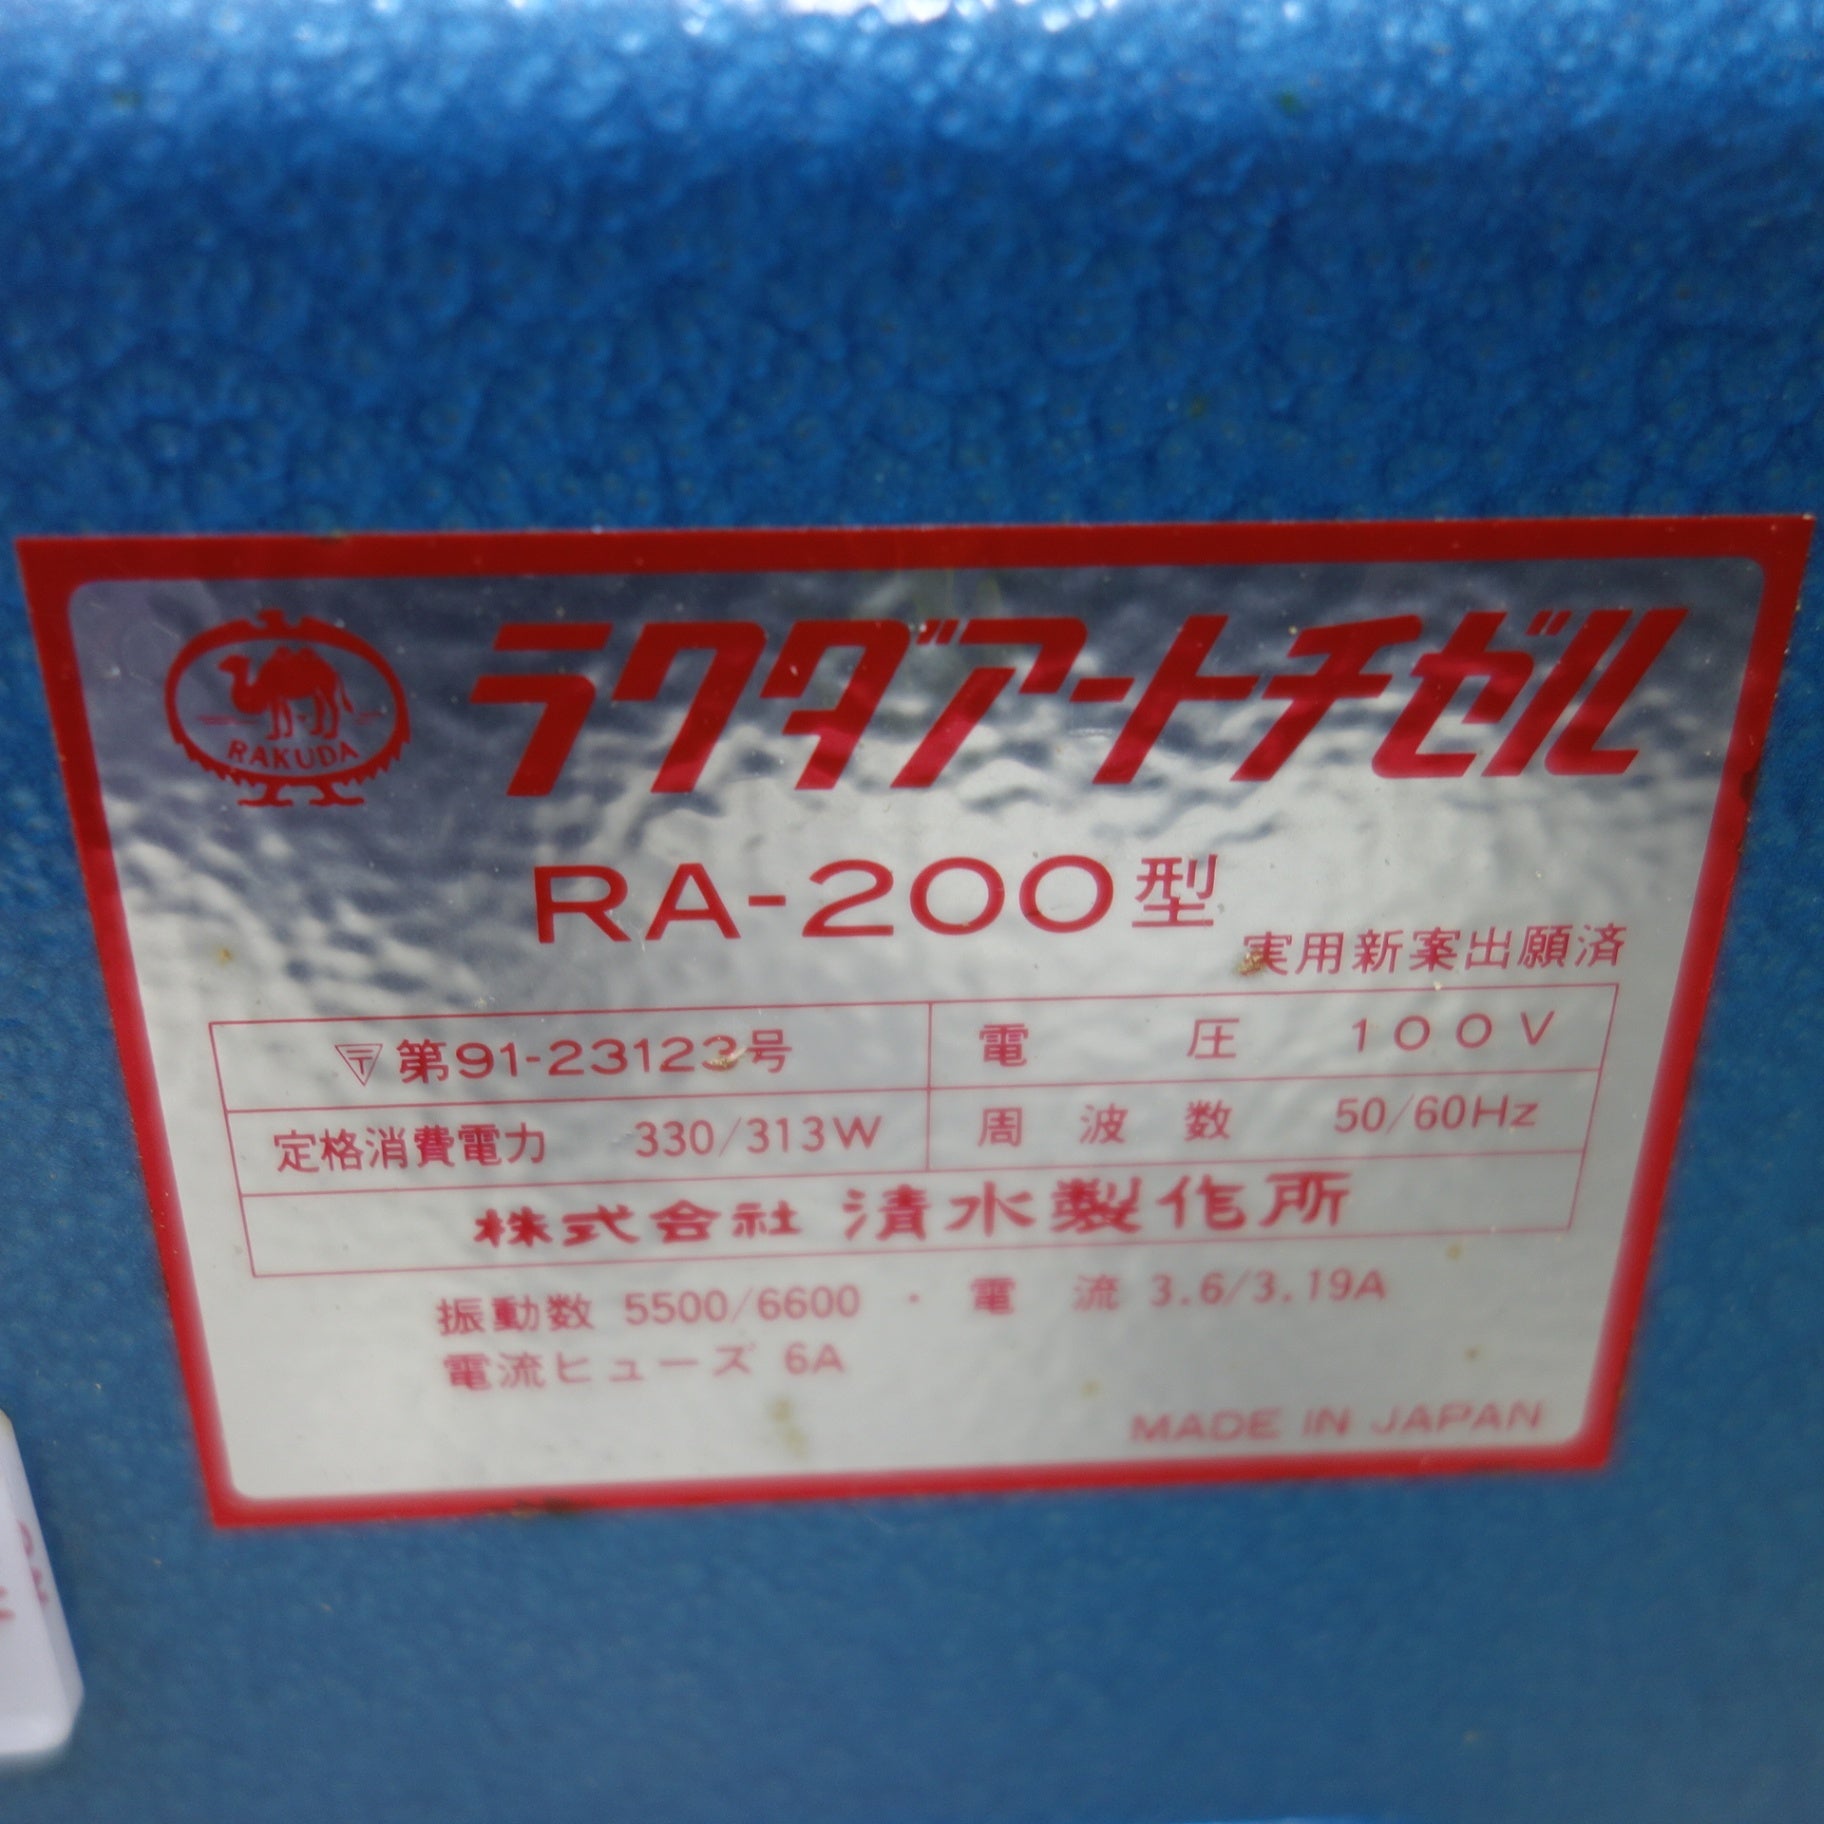 [送料無料] ◆清水製作所 ラクダ アートチゼル RA-200型 電動木彫機 電動工具100V 50/60Hz◆